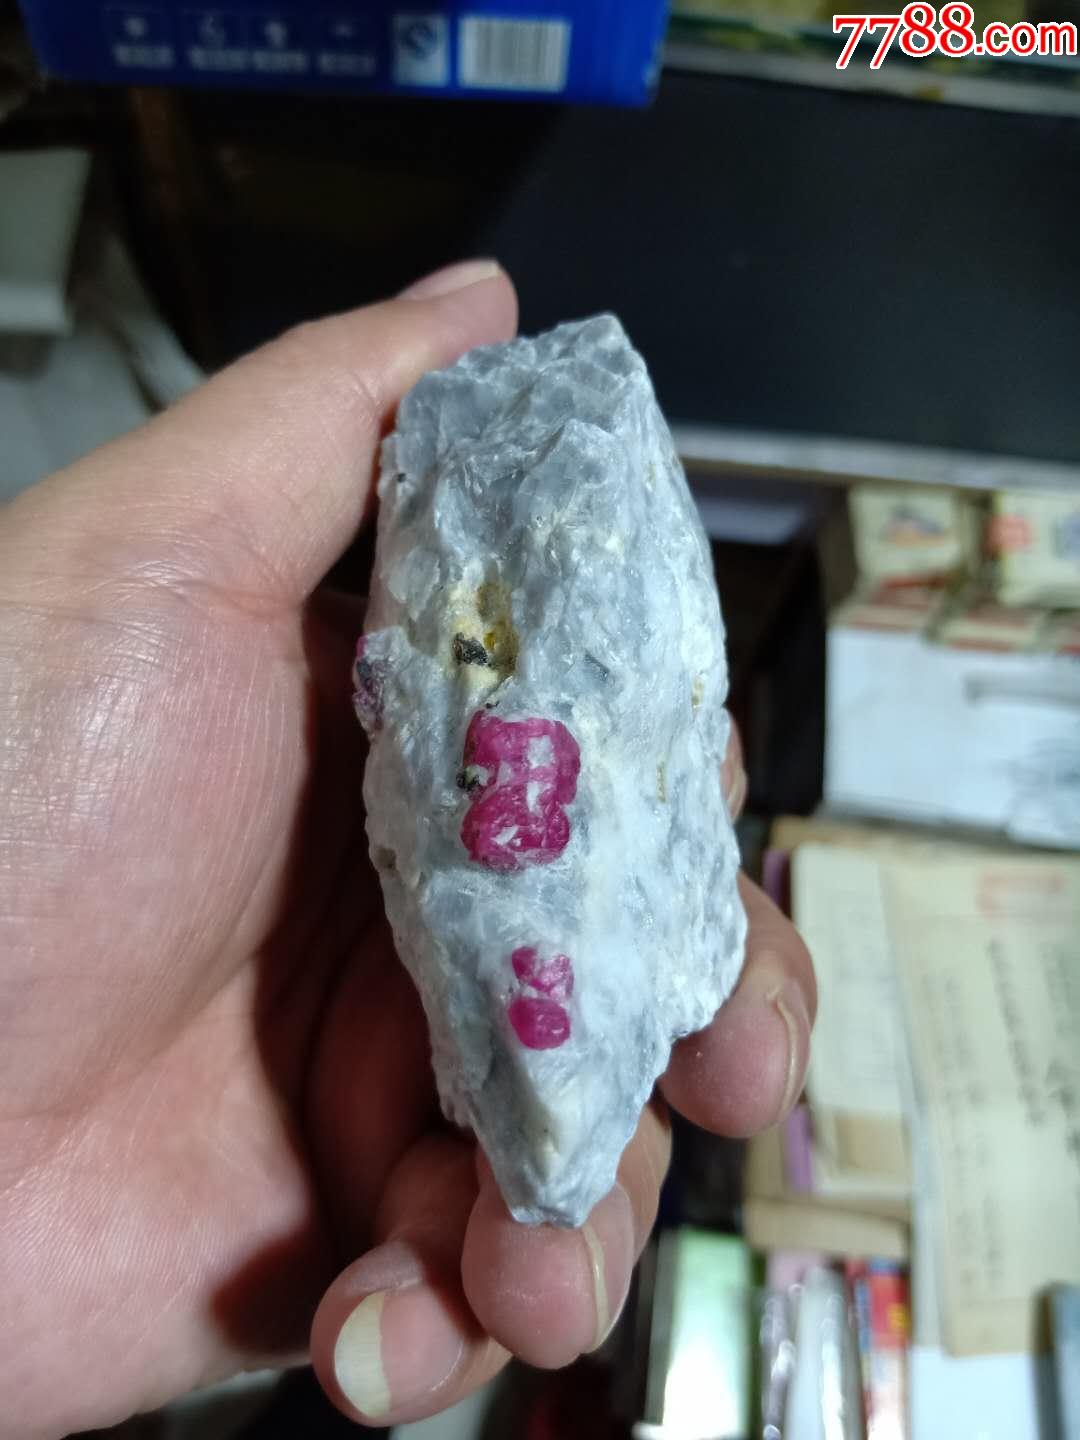 中国发现红宝石原石图片